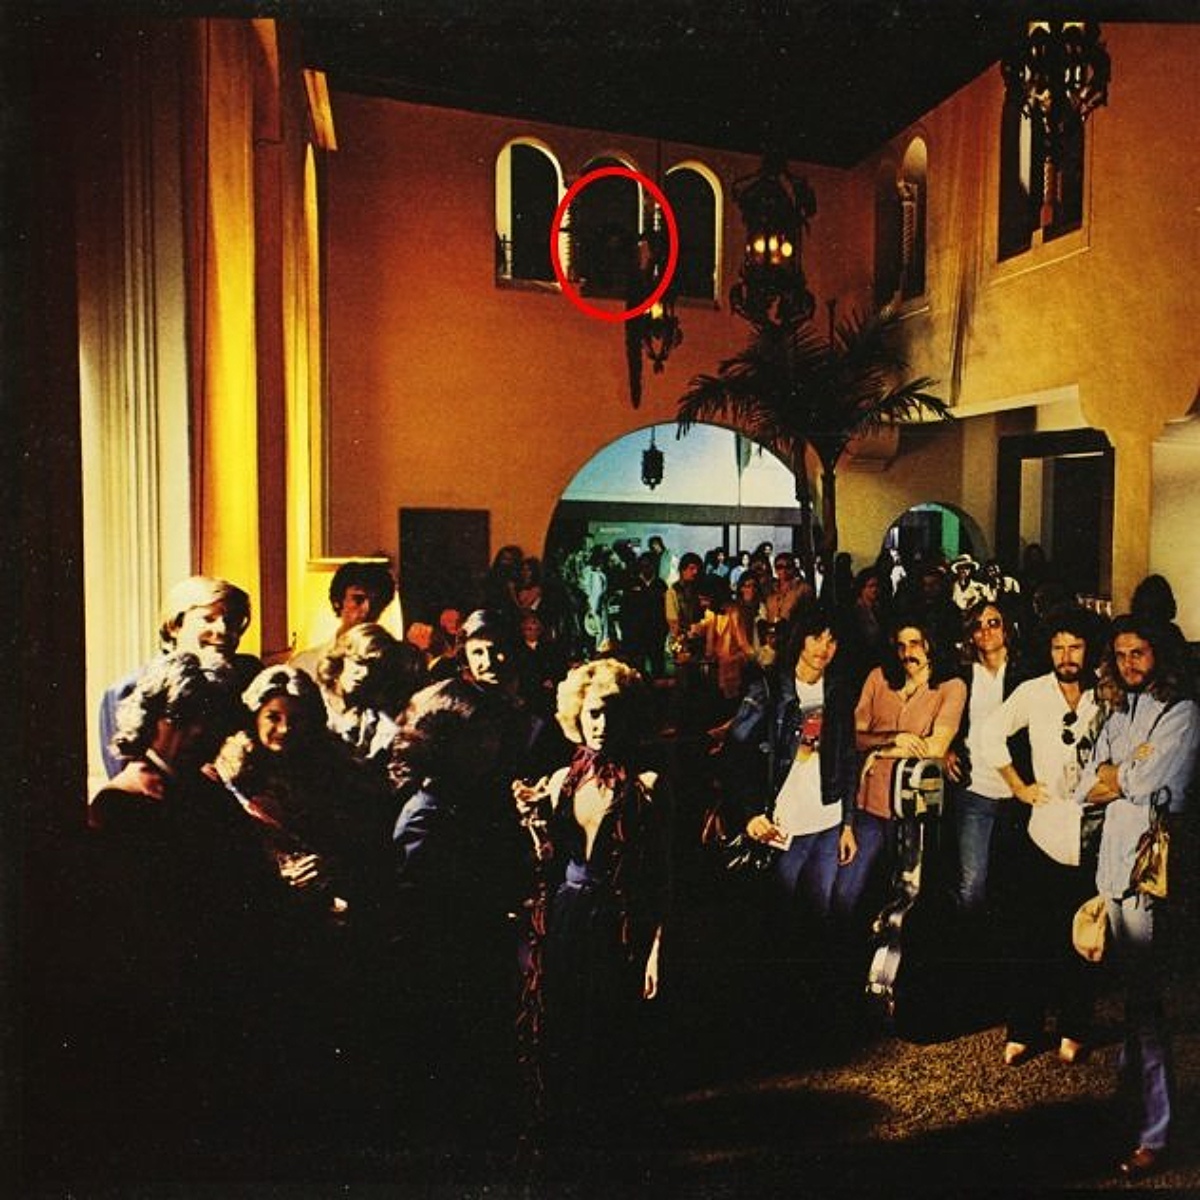 A spread of the Eagles' "Hotel California" album